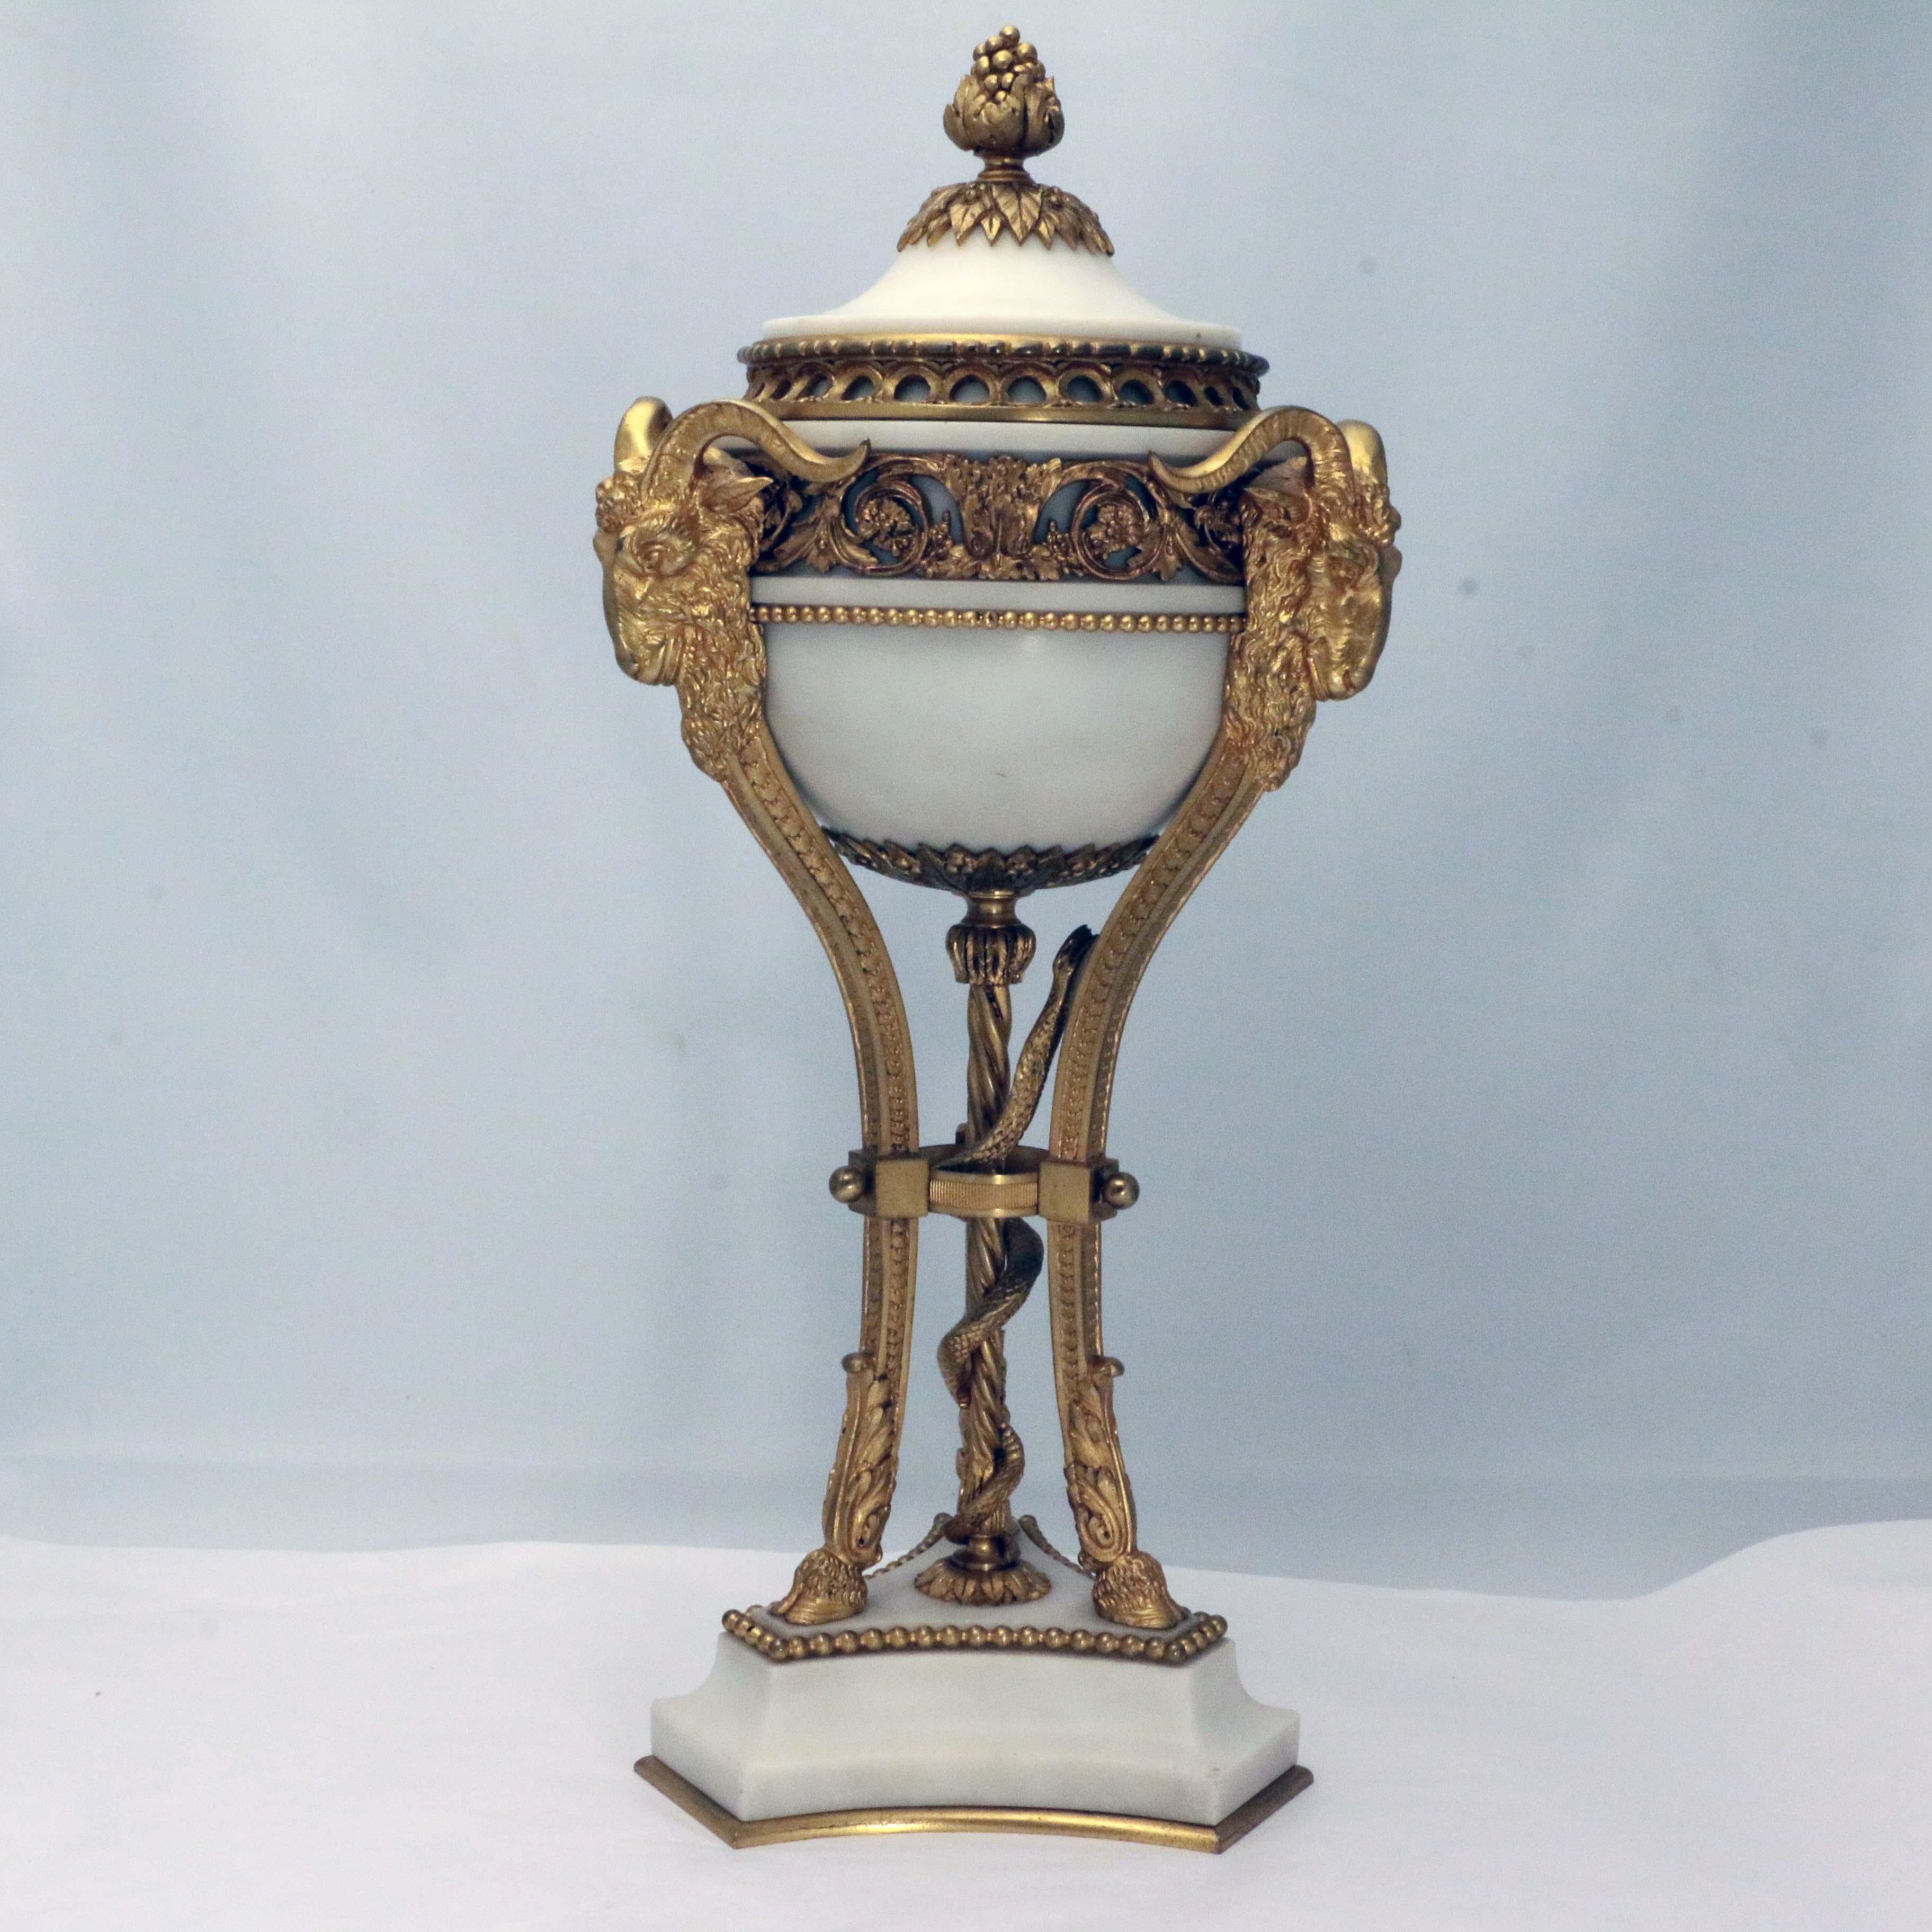 Paire d'urnes couvertes en marbre et bronze doré de style Louis XVI.  embellie par des guirlandes de feuillage et un fleuron de baies, appliquée avec des masques de béliers soulevés sur des supports de pattes d'animaux entourant une colonne en